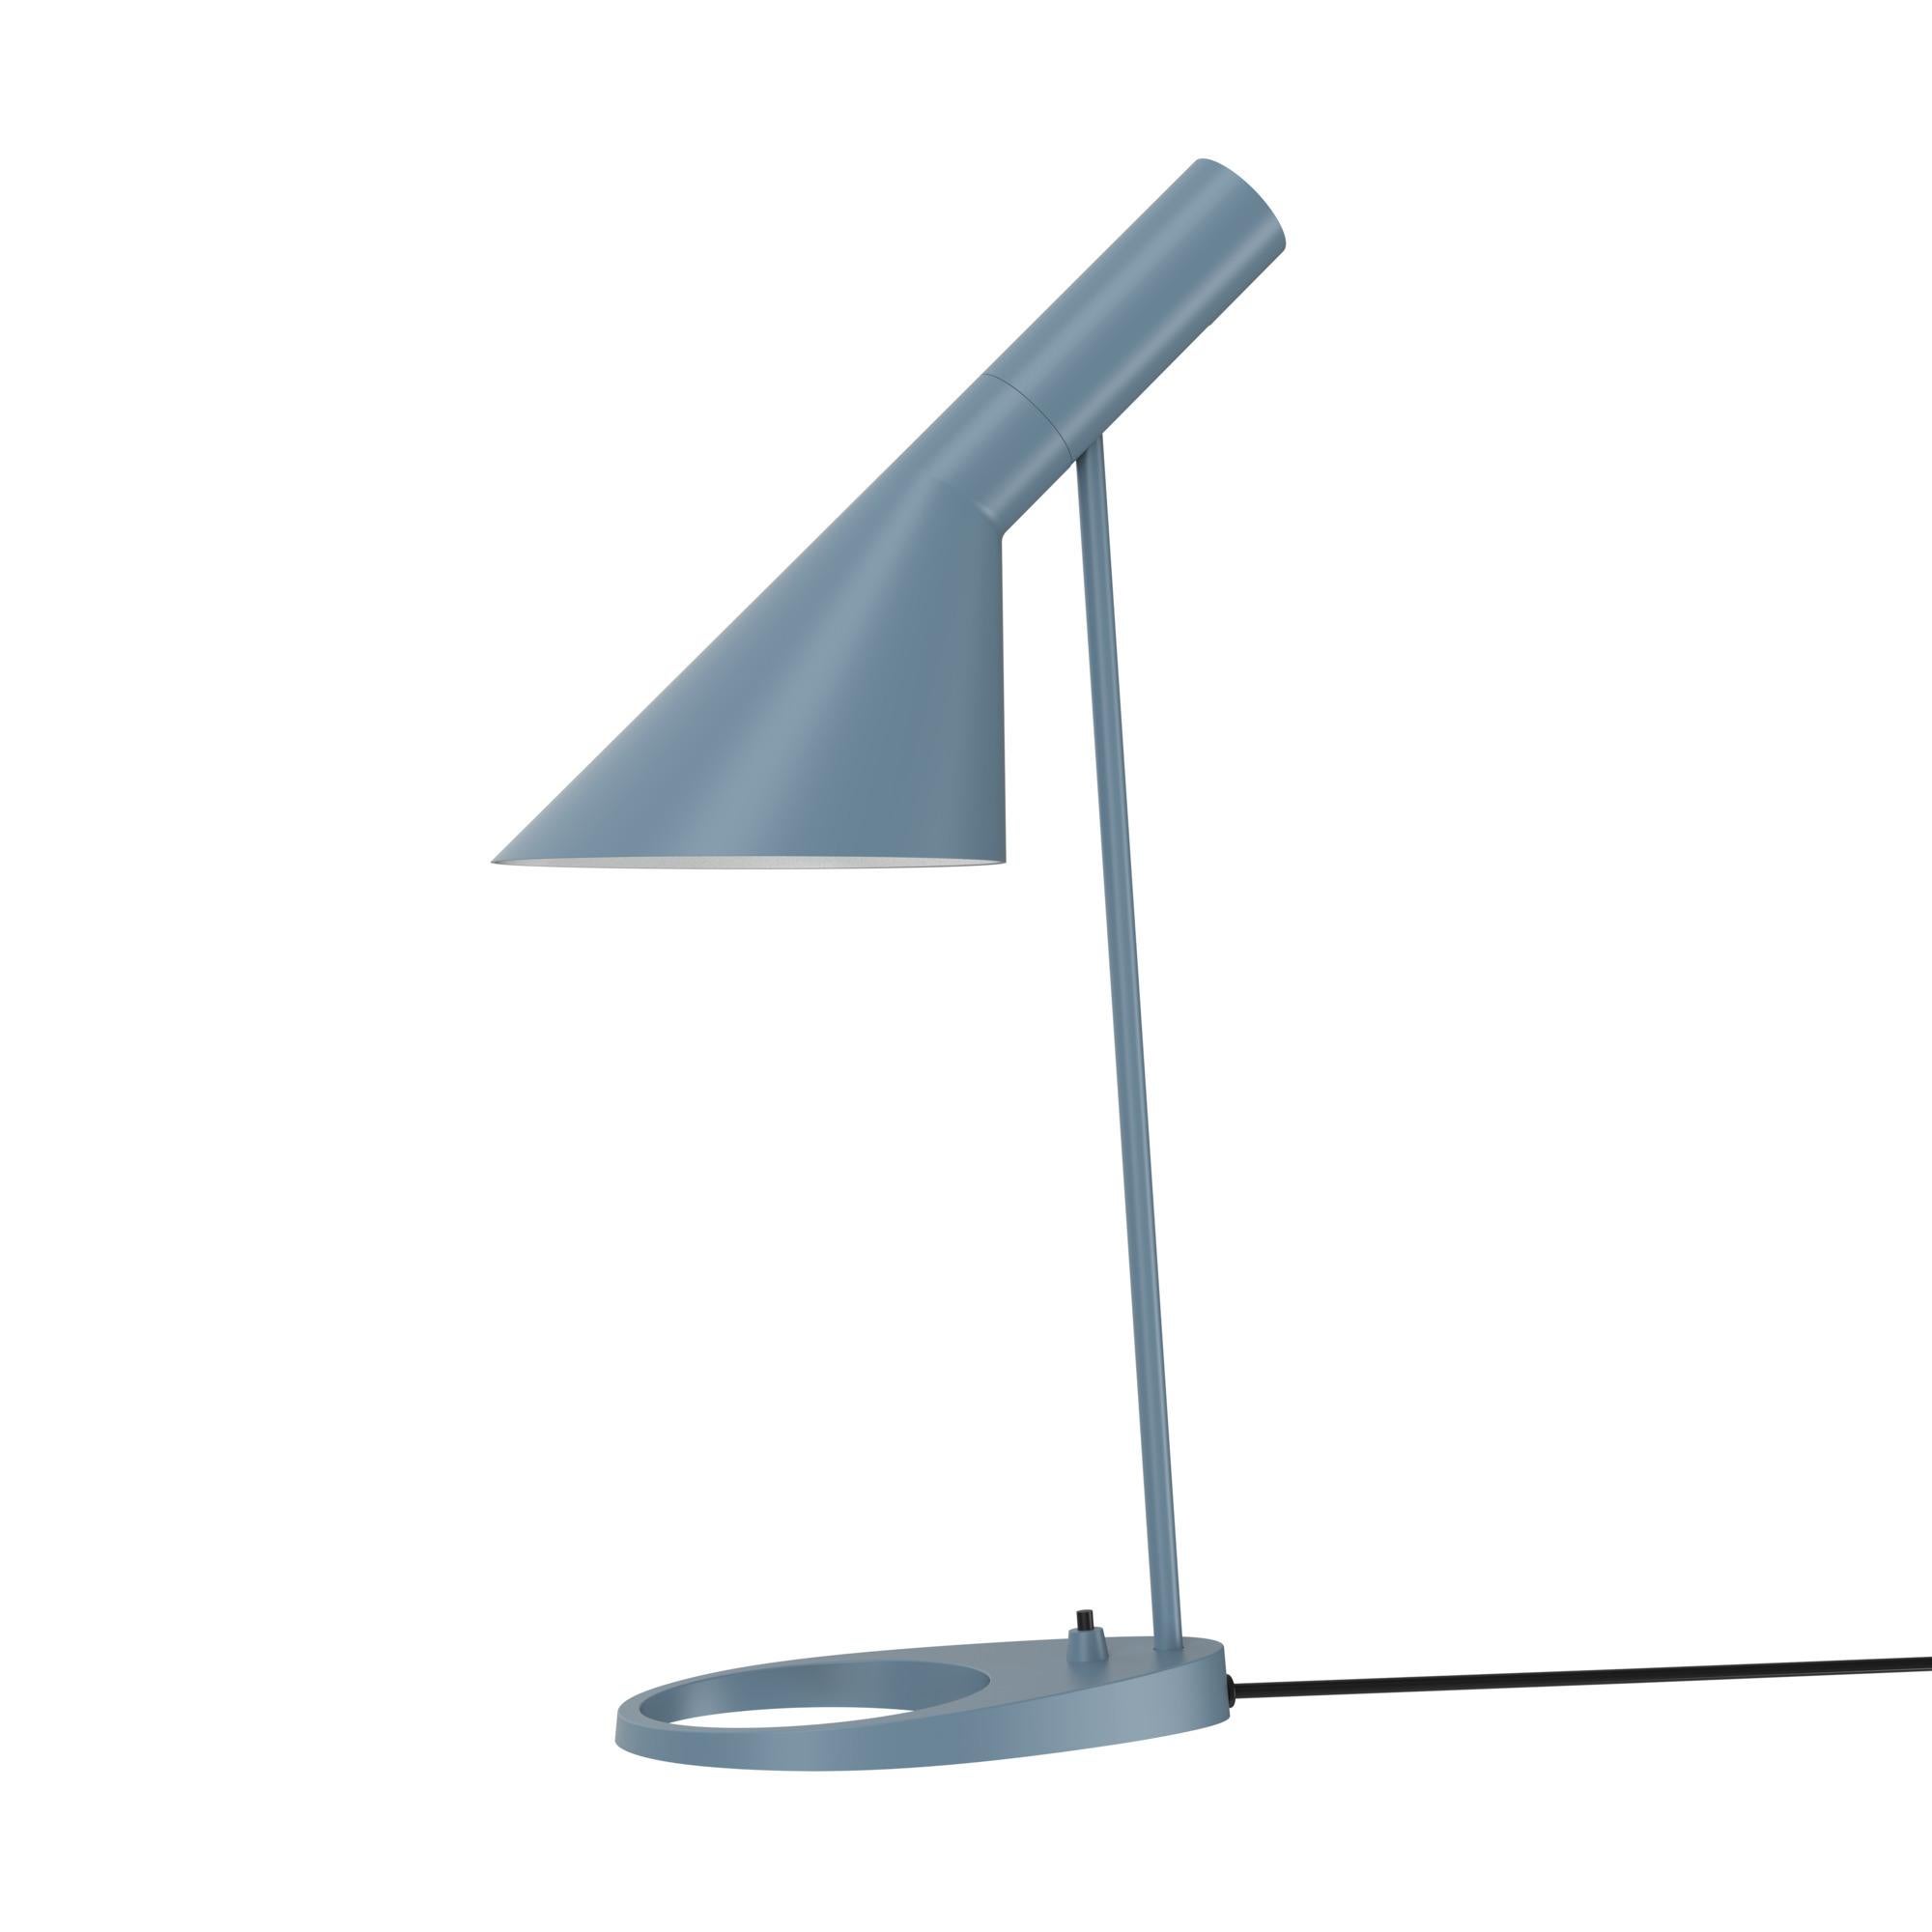 Arne Jacobsen AJ Table Lamp in White for Louis Poulsen For Sale 3